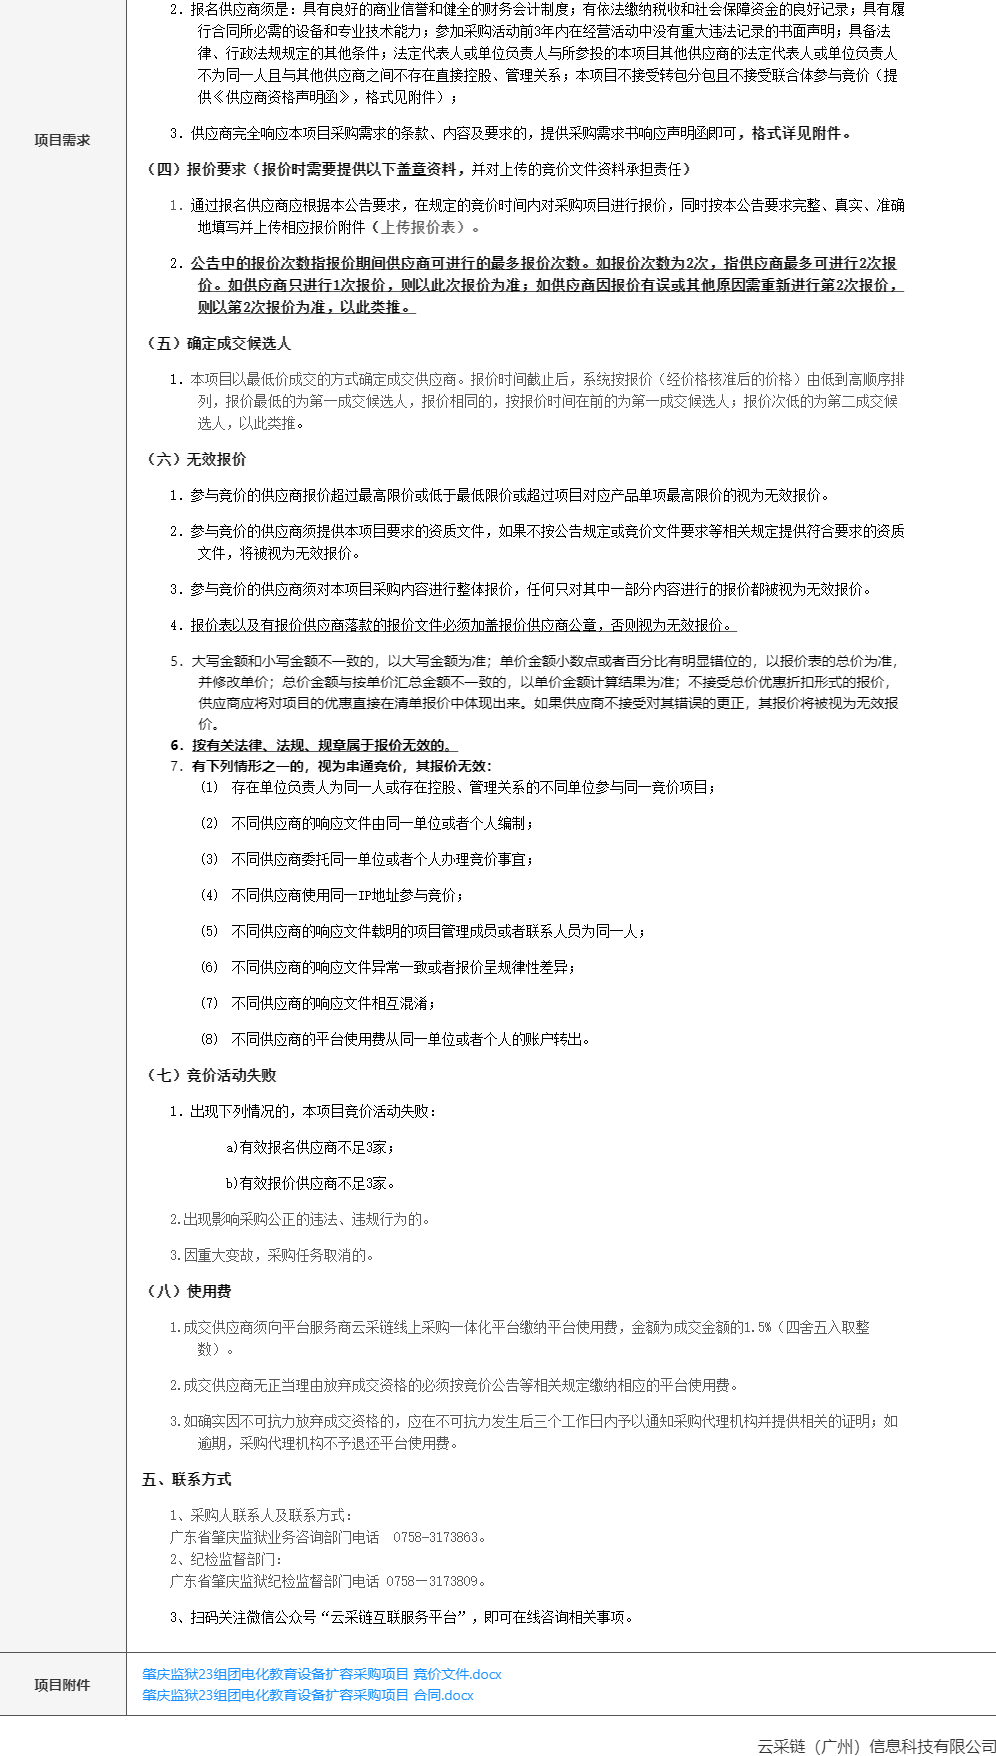 肇庆监狱23组团电化教育设备扩容采购项目竞价公告2.png